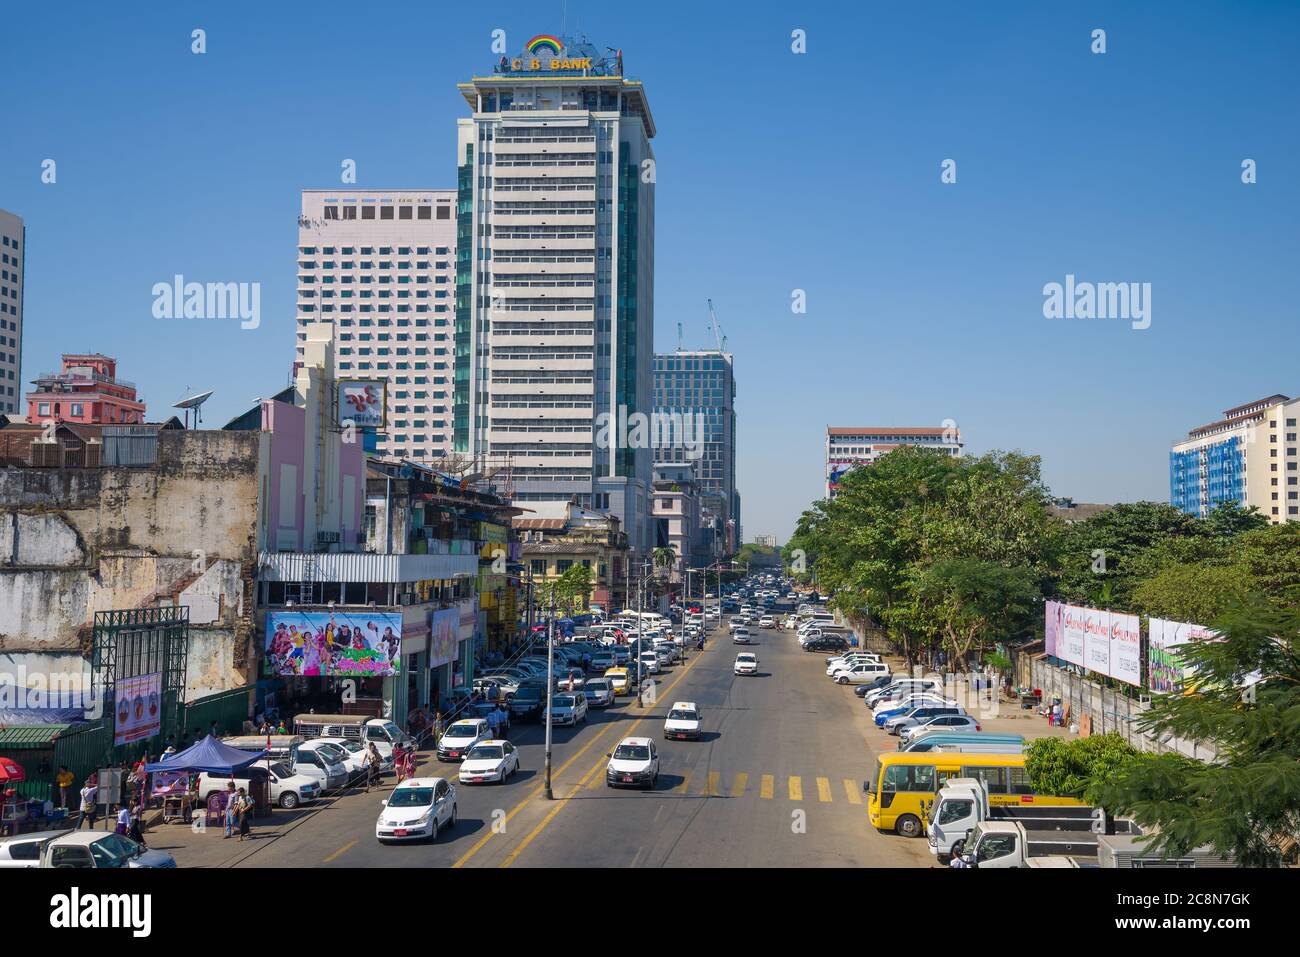 YANGON, MYANMAR - DECEMBER 18, 2016: Urban street in modern Yangon Stock Photo